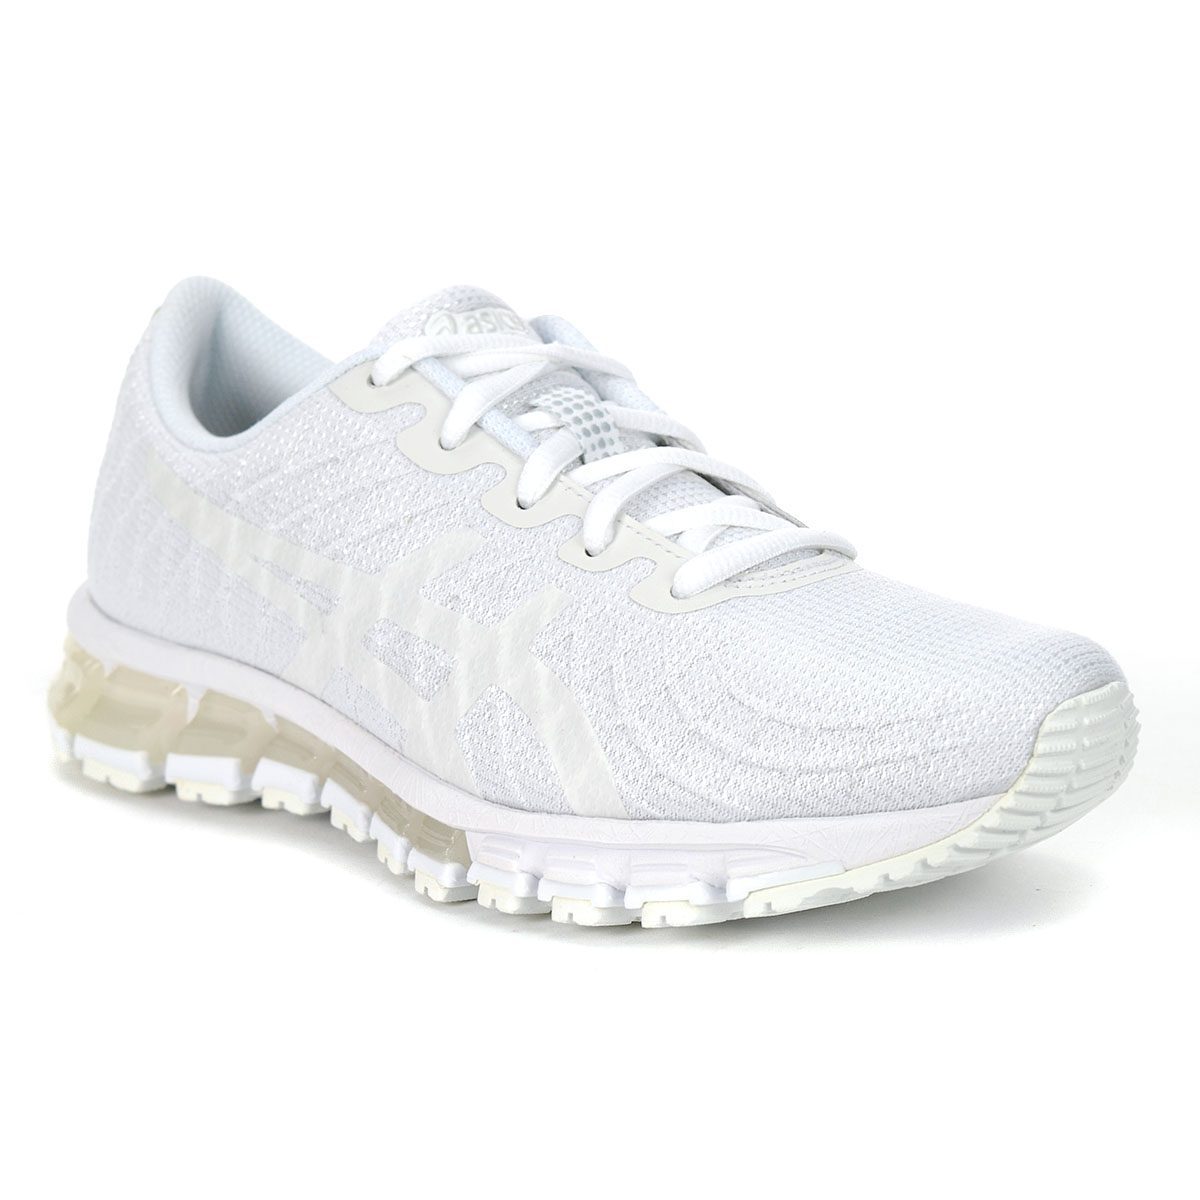 White asics running shoes